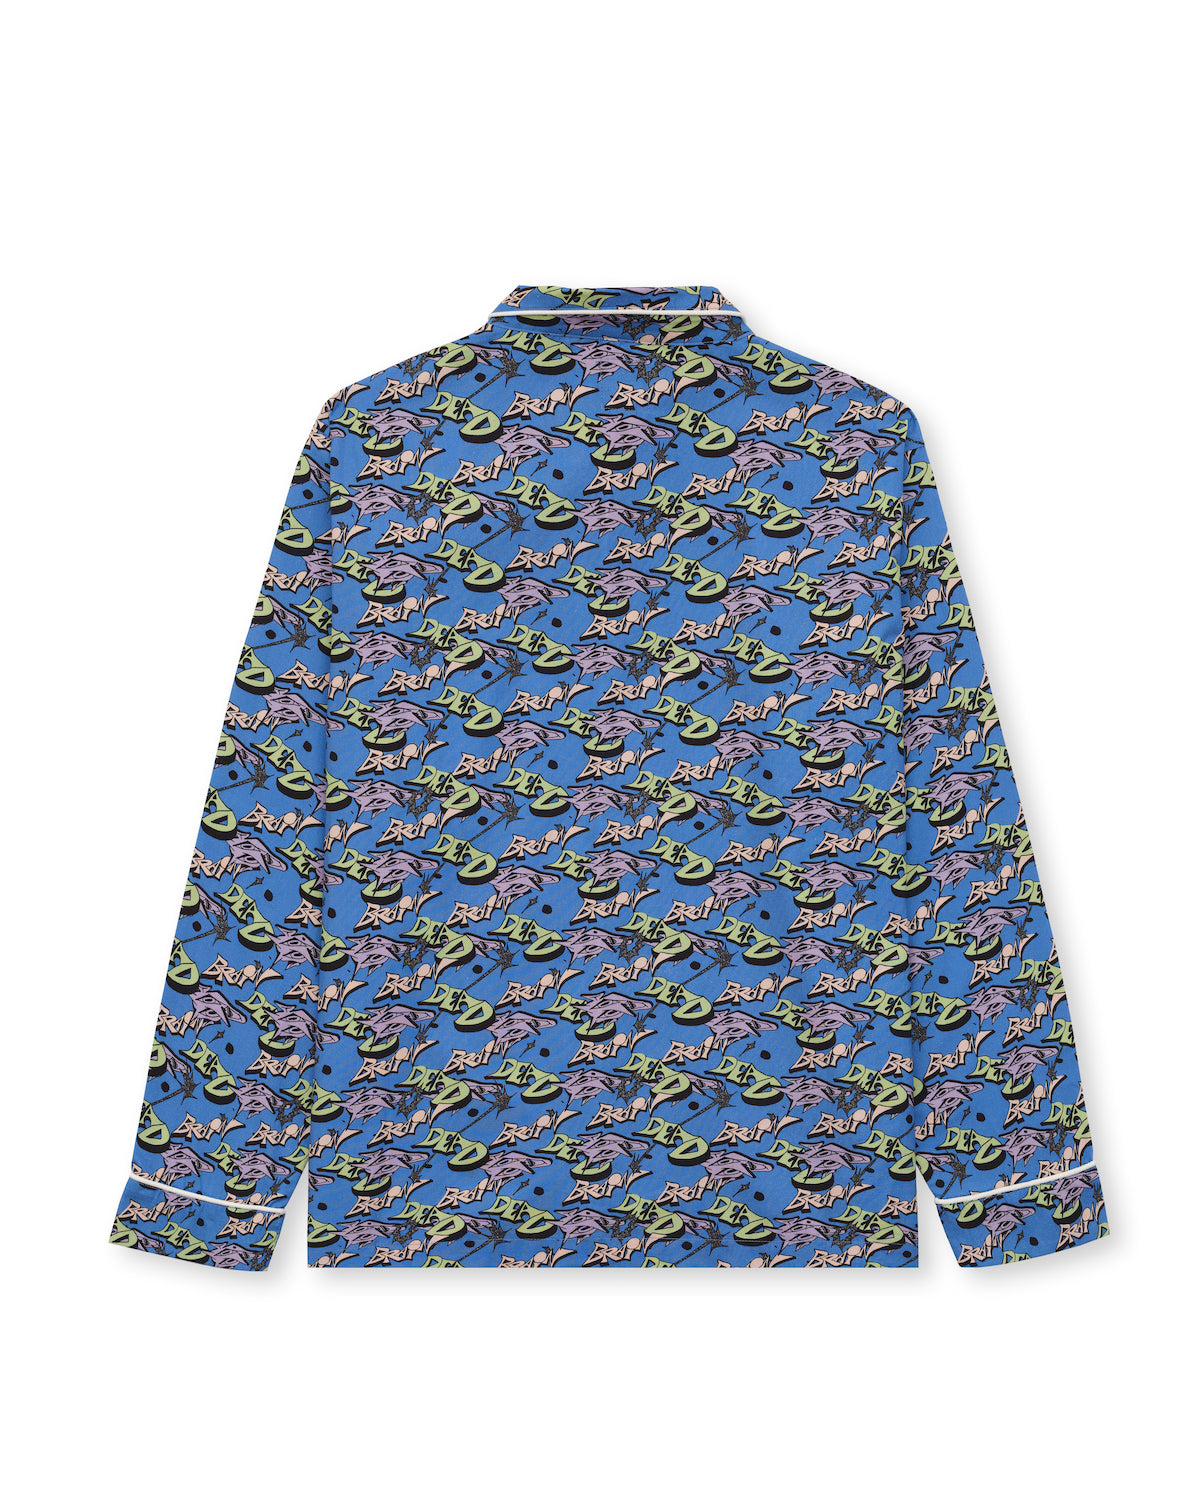 Erratic Pajama Top - Multi 2